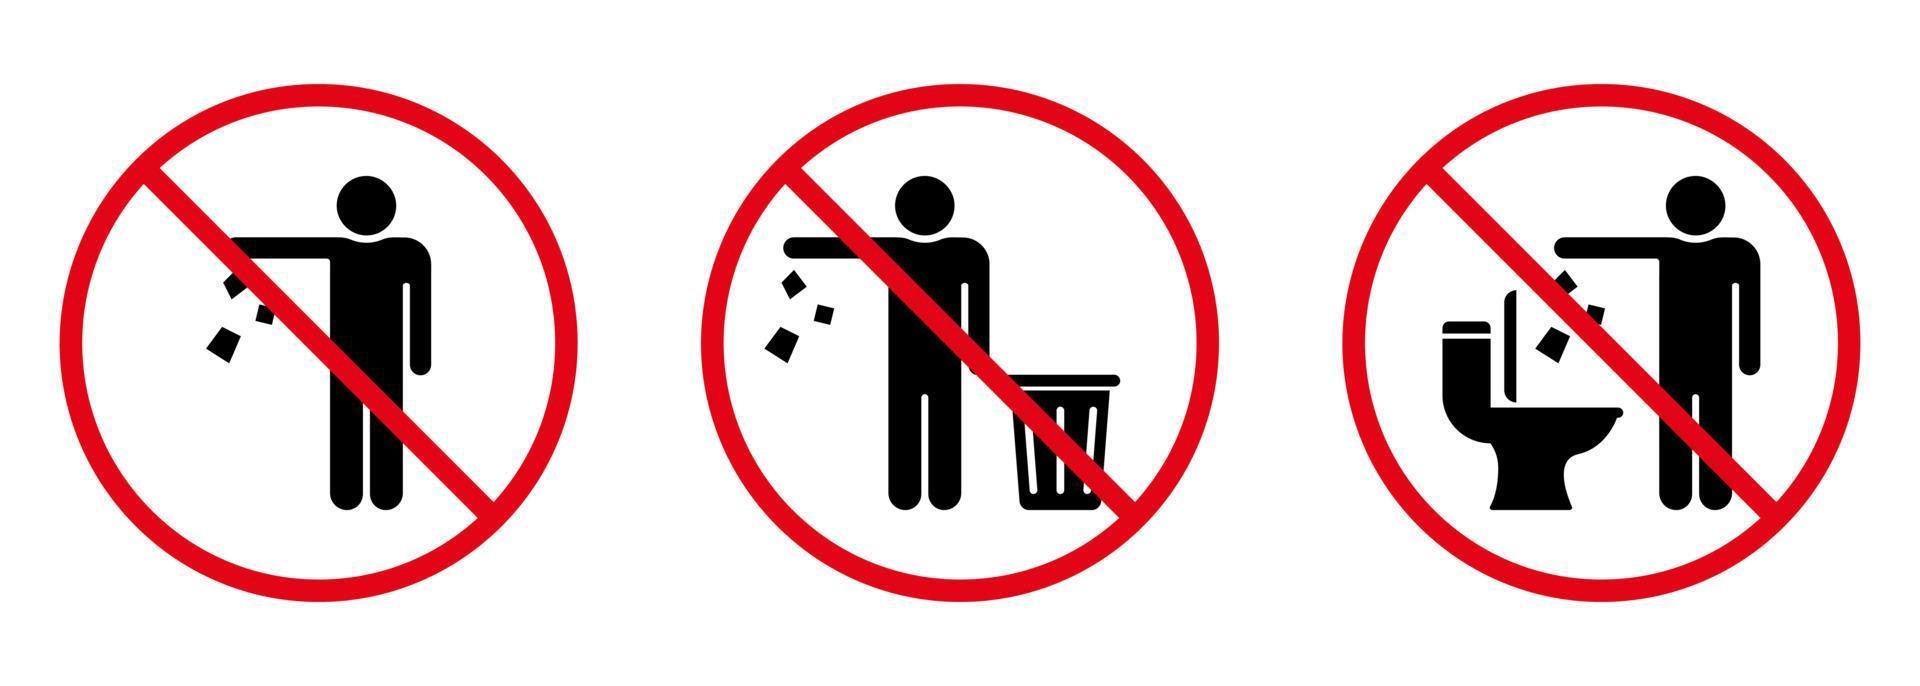 no tire basura en el icono de la silueta del signo del inodoro. prohibido tirar basura, residuos, símbolo de basura. advertencia, por favor, deje caer la basura en el icono de la papelera. mantenga limpio el pictograma de glifo. ilustración vectorial aislada. vector